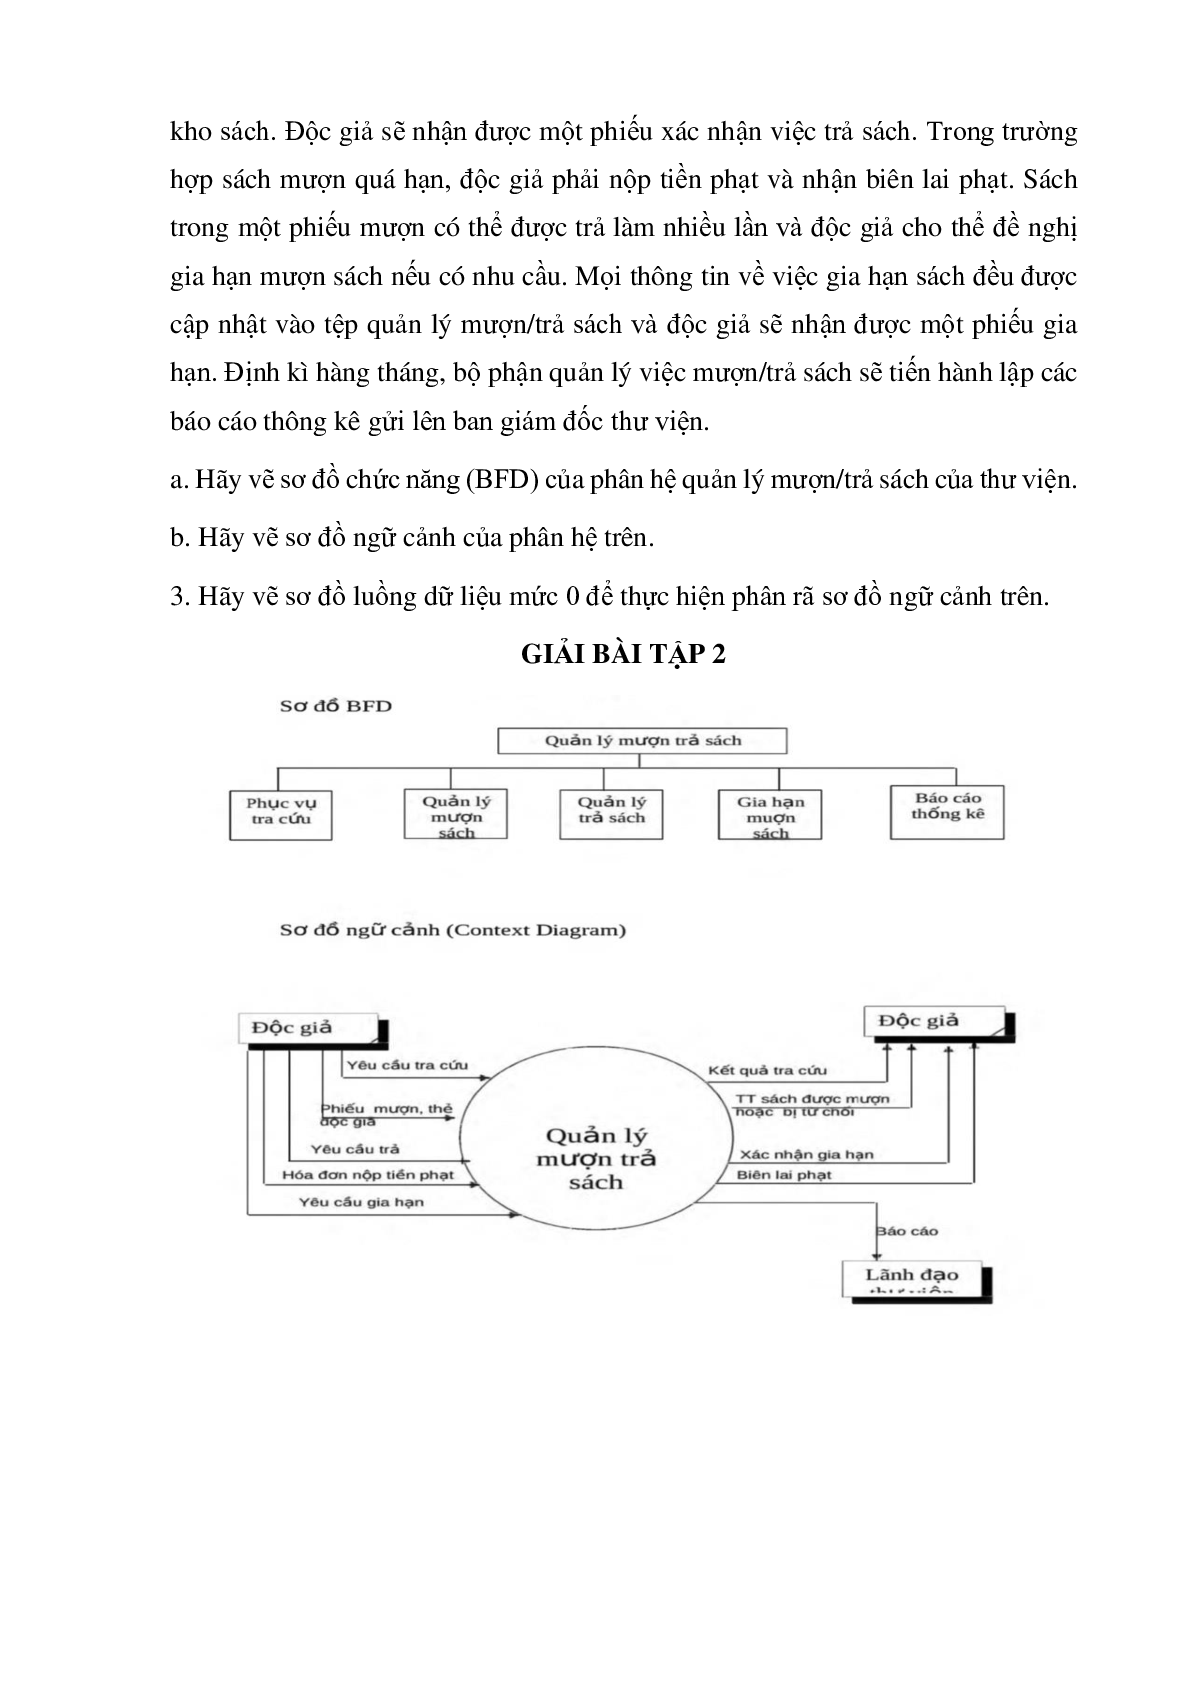 Ngân hàng bài tập Hệ thống thông tin quản lý (có lời giải) hay, hấp dẫn nhất (trang 4)